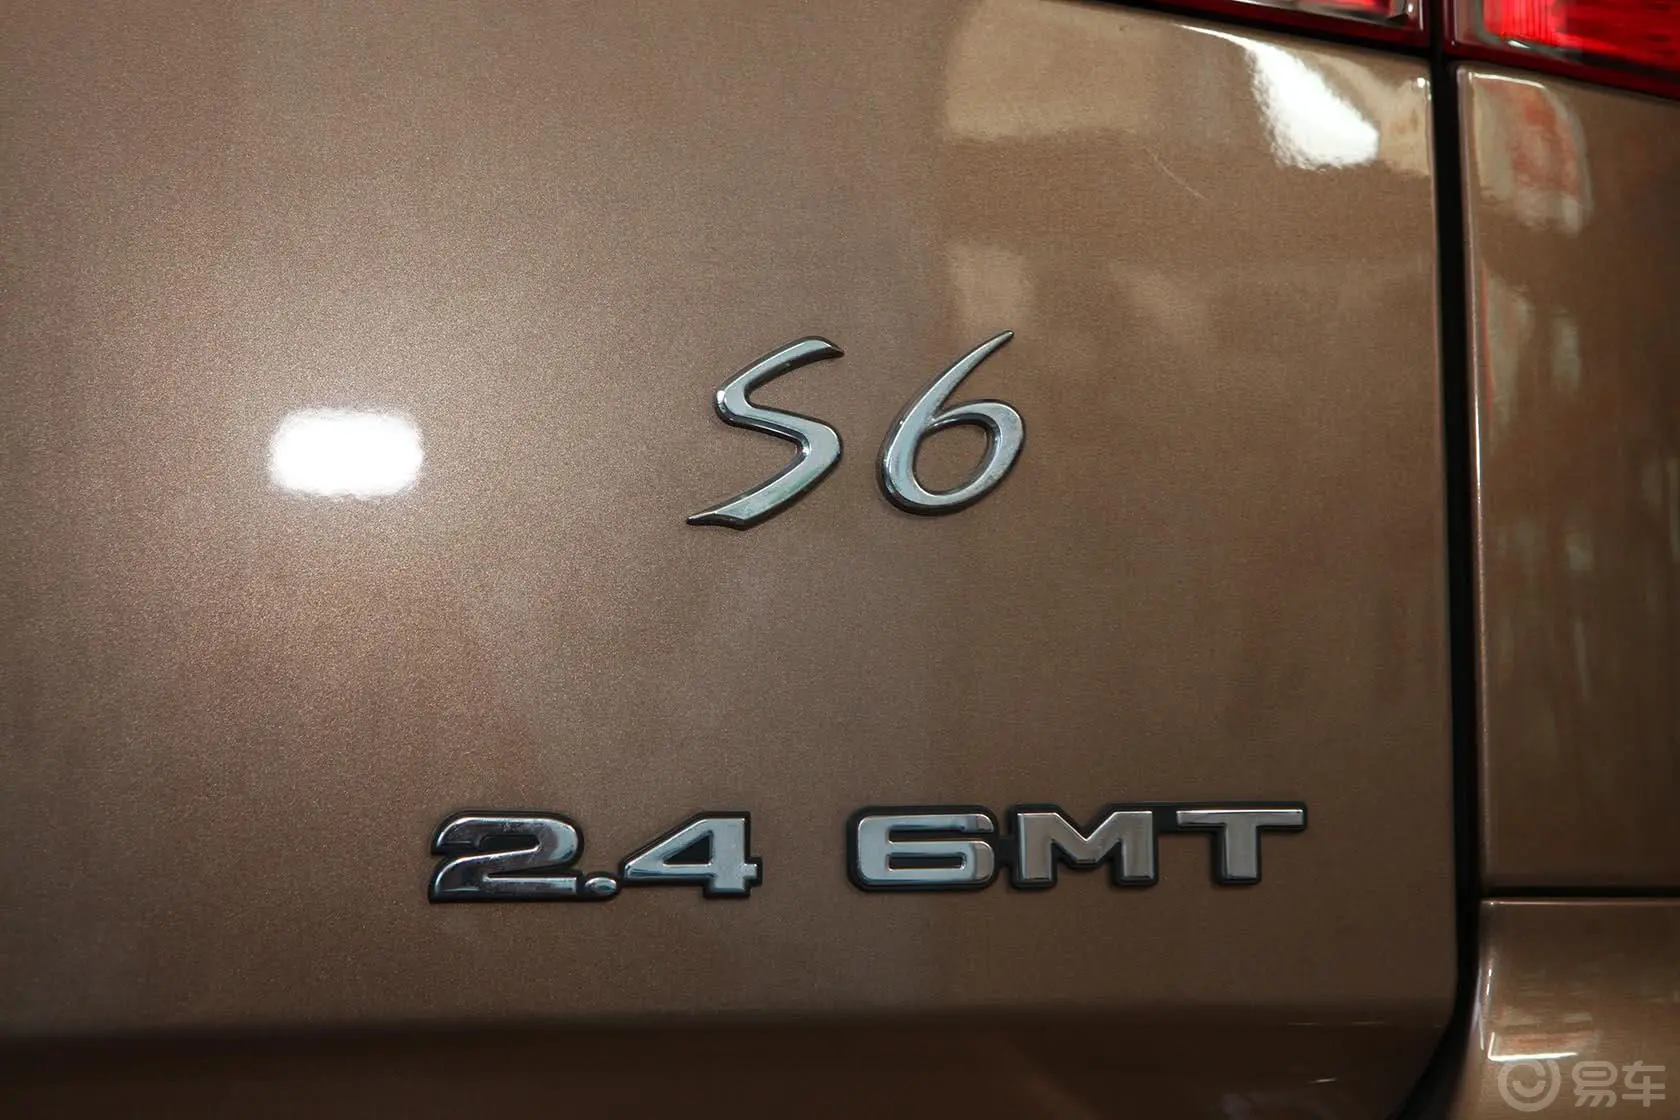 比亚迪S62.4L 手动 精英型 白金版尾标